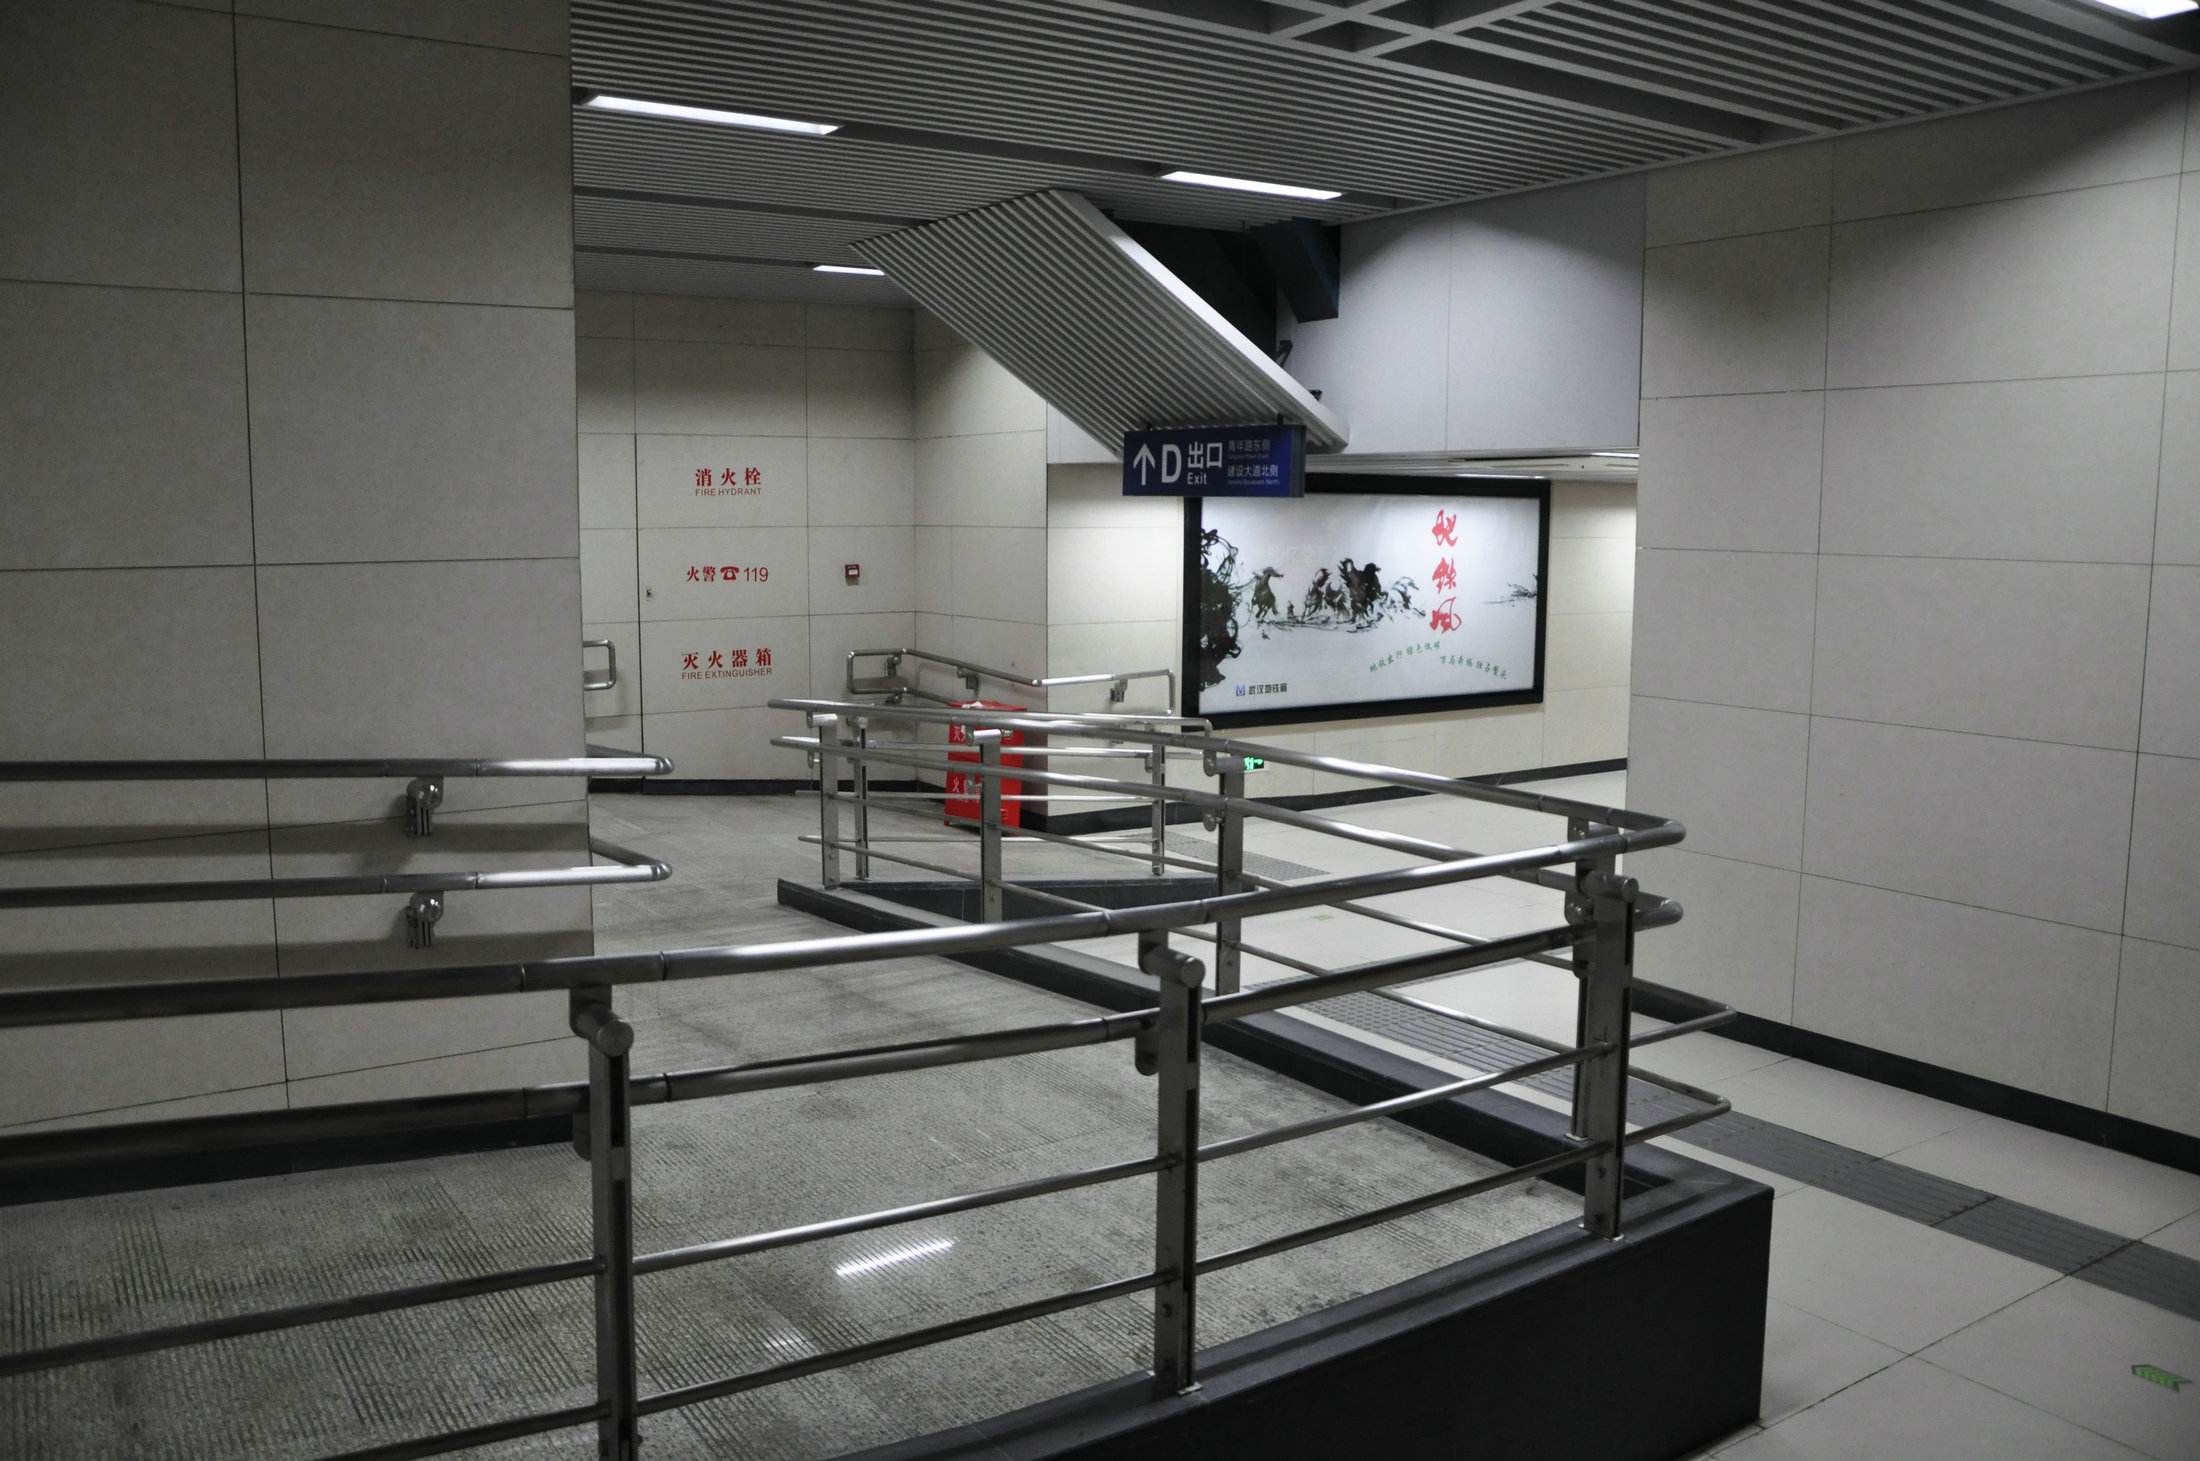 地铁的无障碍电梯成逃票通道?_搜狐社会_搜狐网